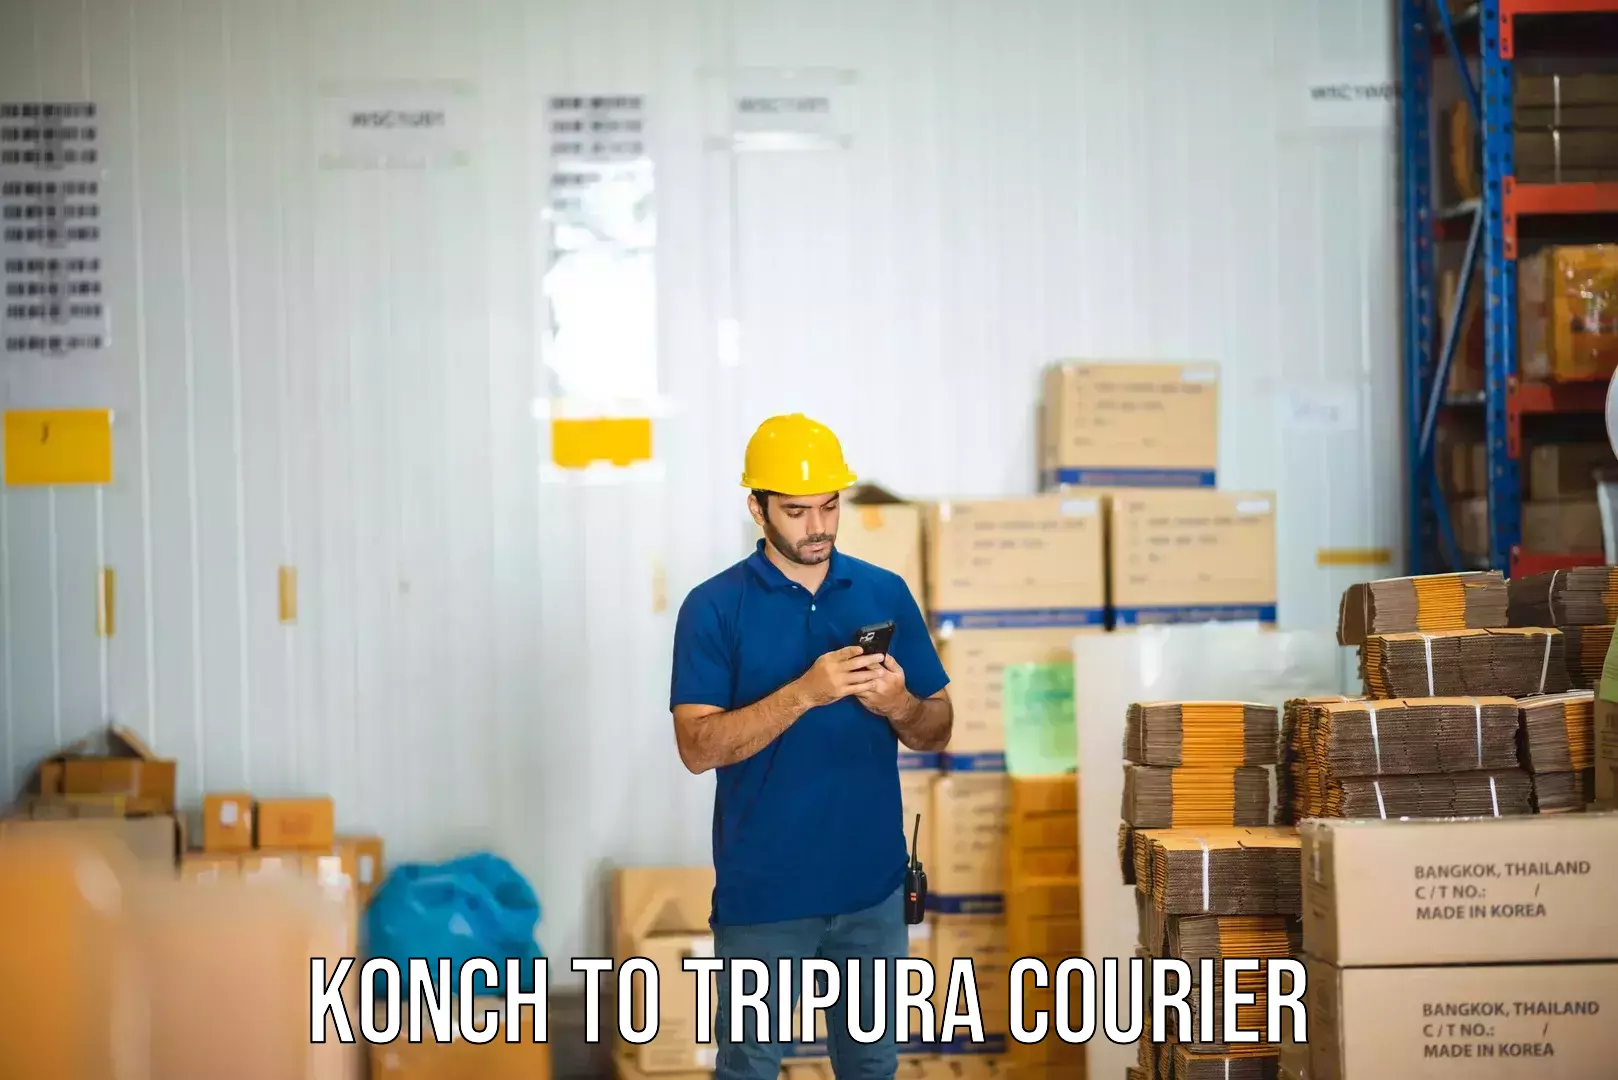 Express postal services Konch to Tripura